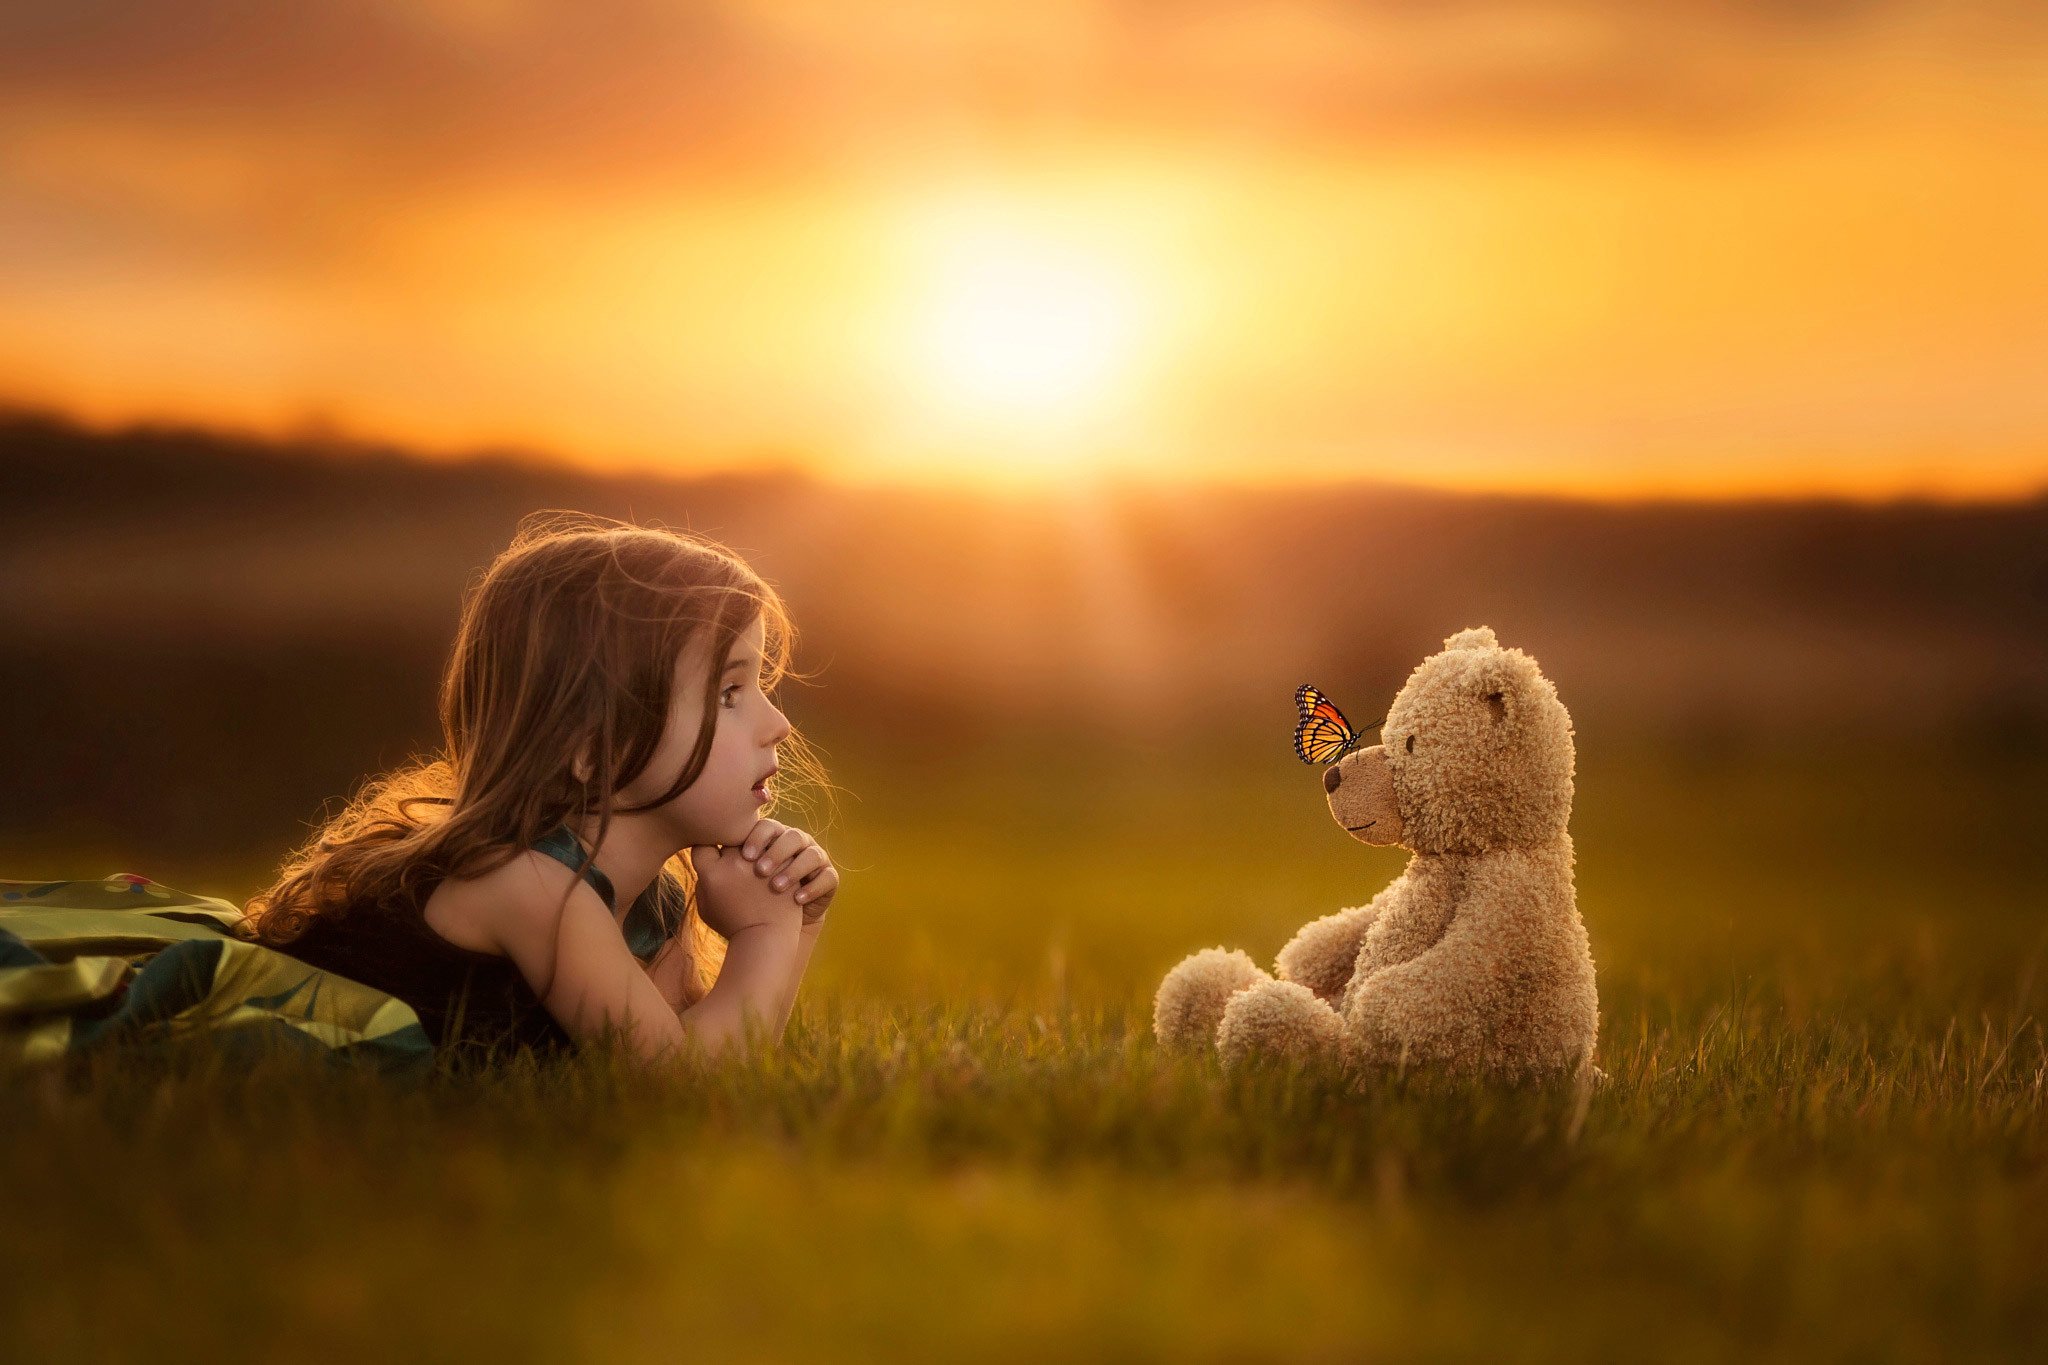 child, Girl, Toy, Teddy, Bear, Butterfly, Field, Grass, Sun, Sunset, Mood Wallpaper